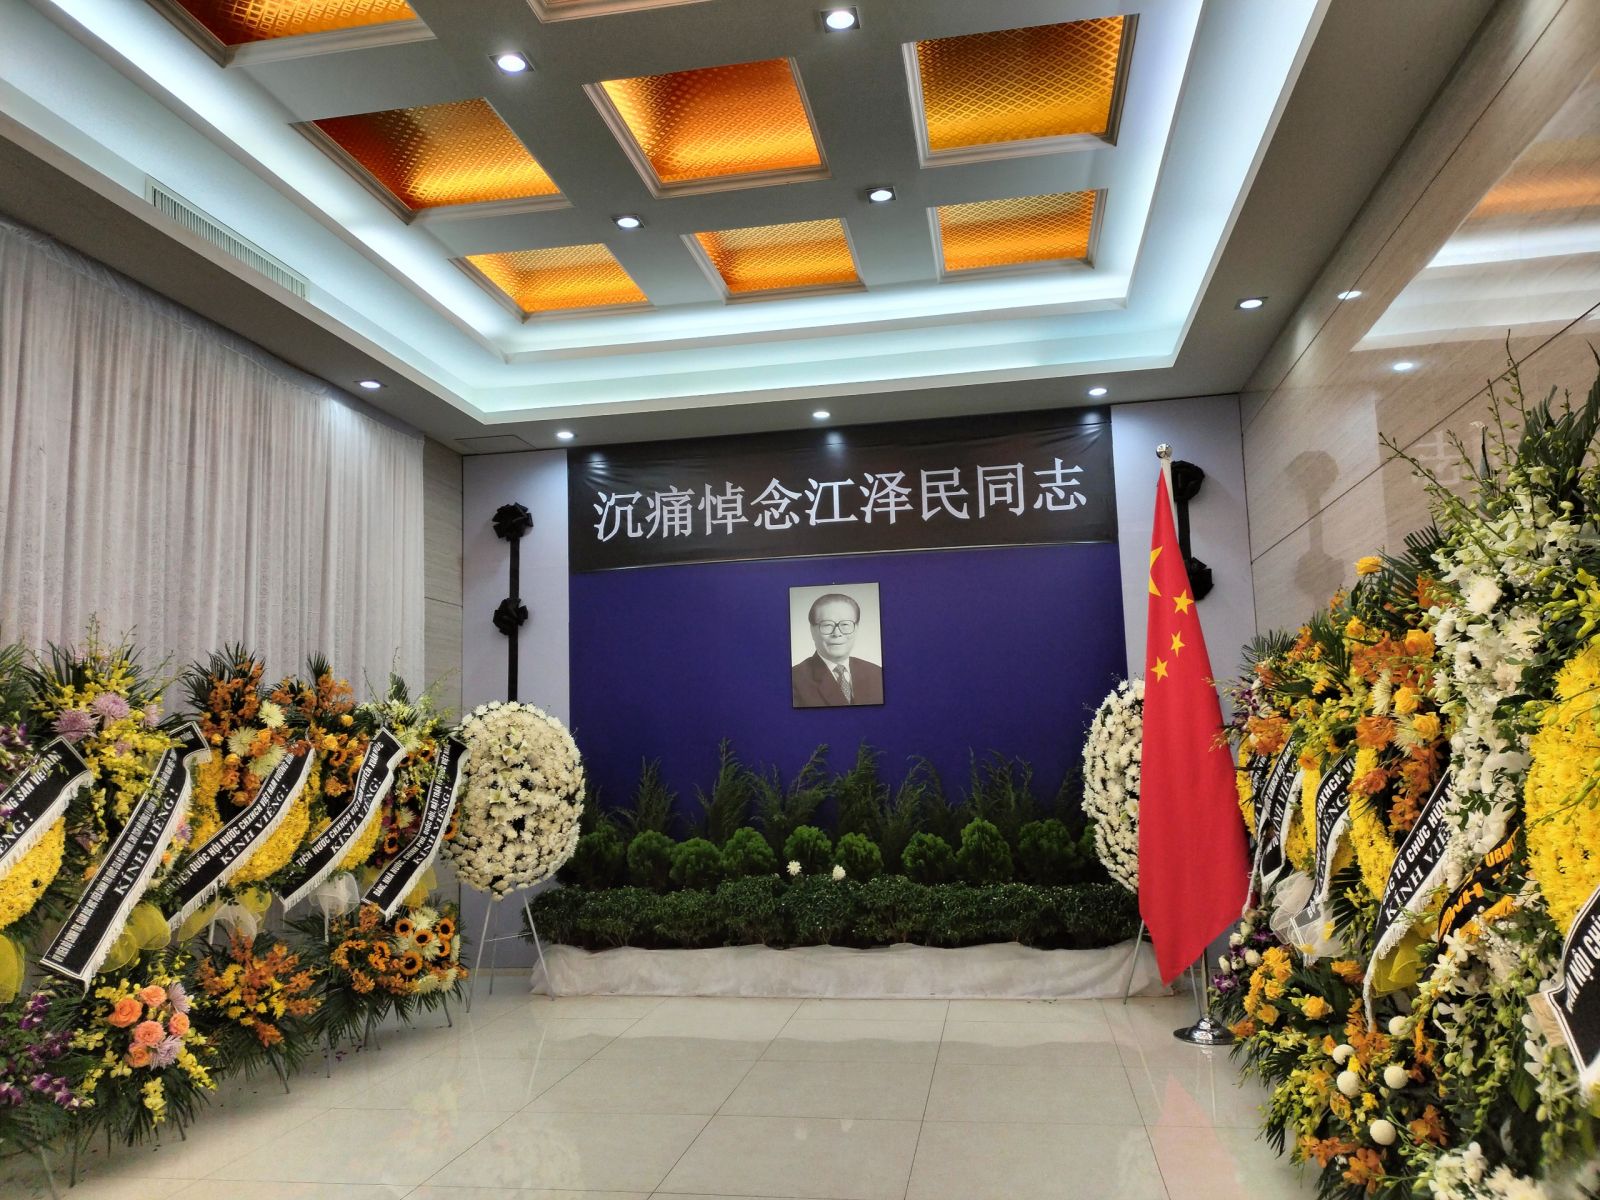 Đoàn Hội Luật gia Việt Nam viếng nguyên Tổng Bí thư, Chủ tịch Trung Quốc Giang Trạch Dân